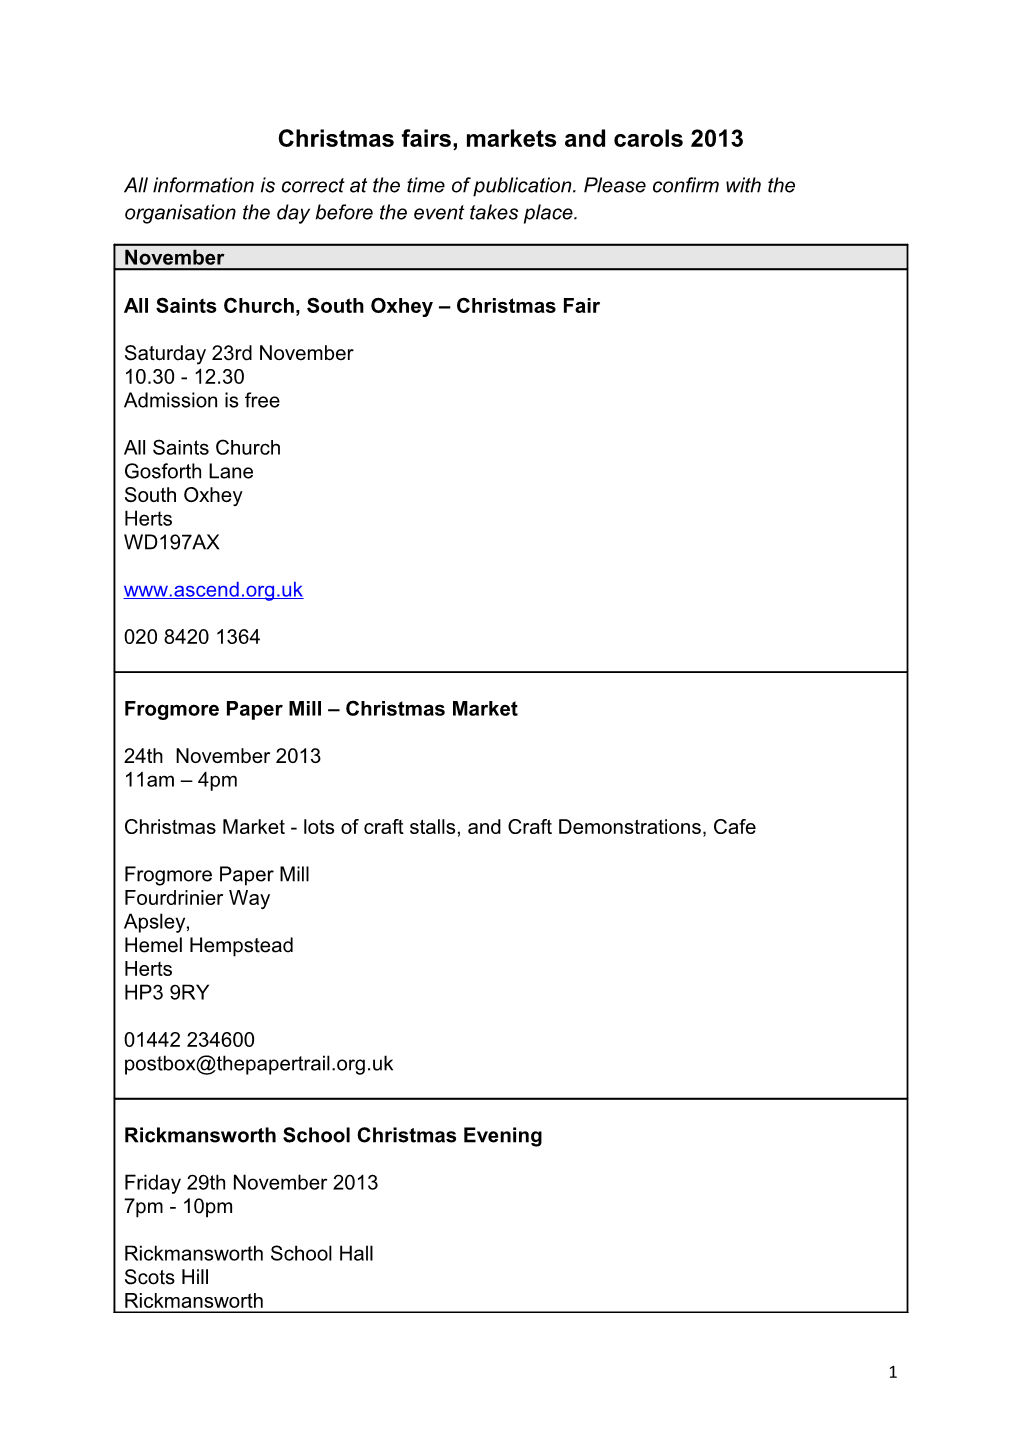 Christmas Fairs, Markets and Carols 2013